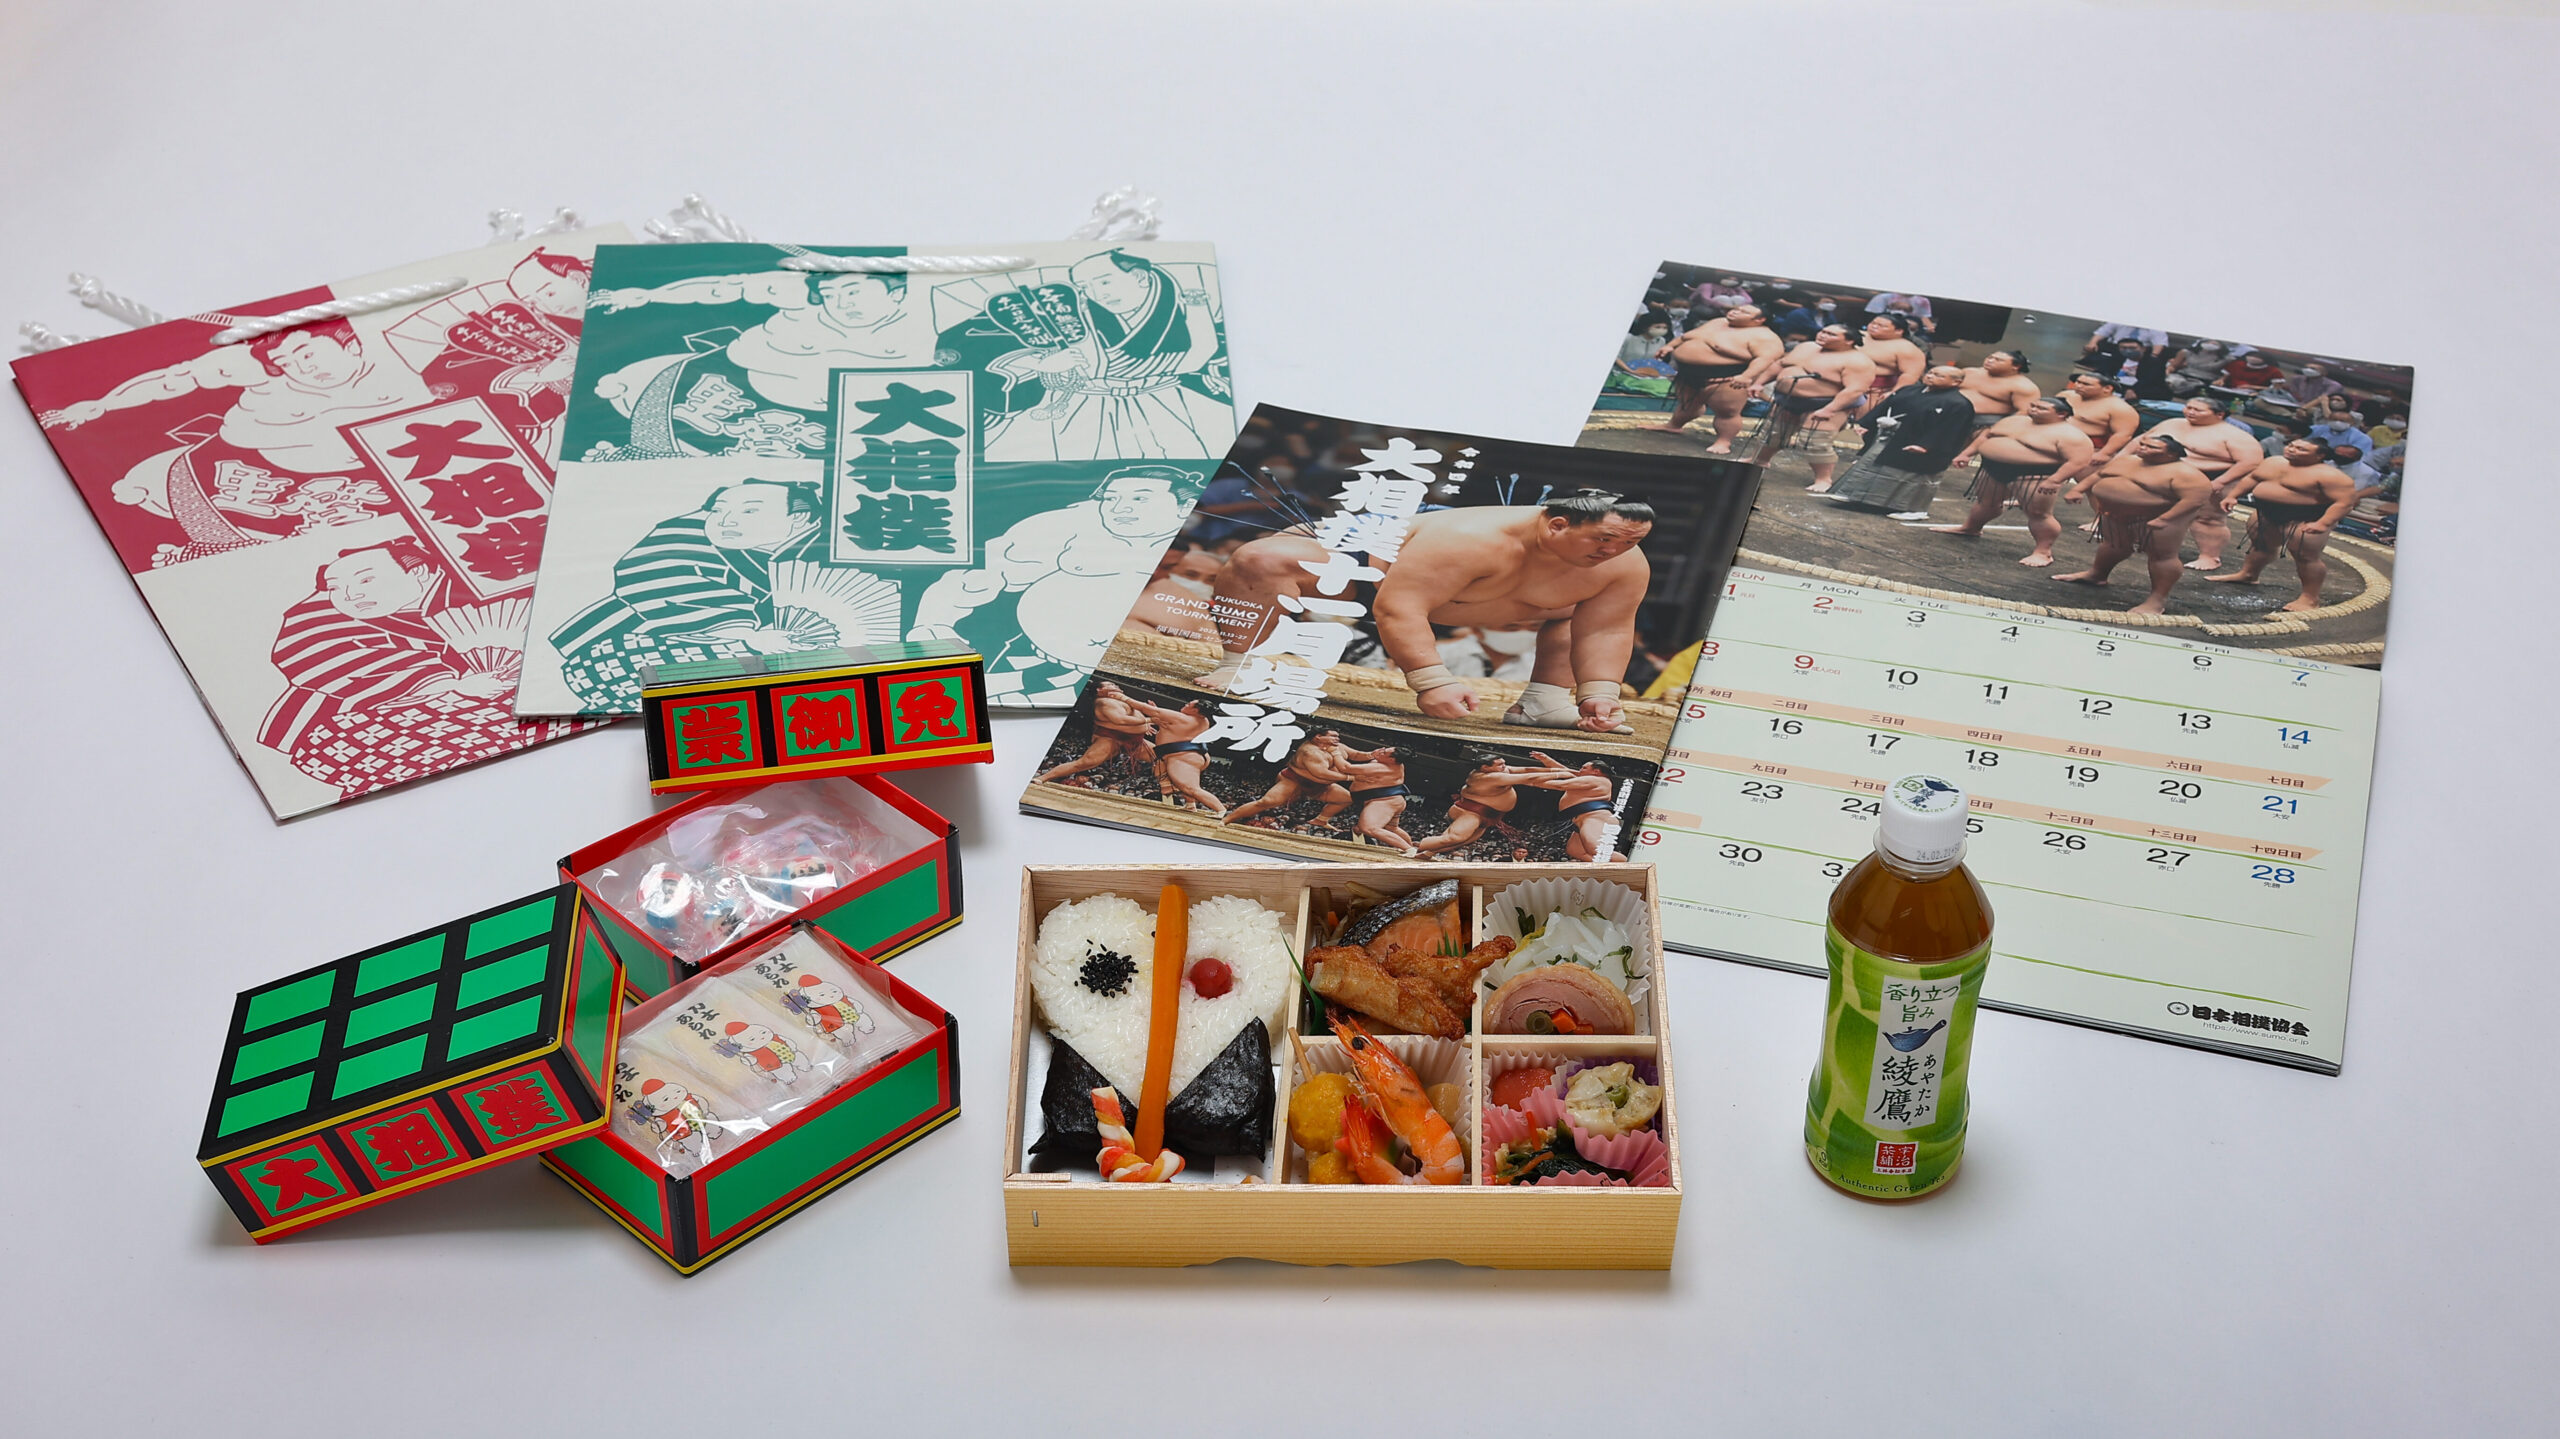 軍配幕ノ内弁当 お茶 大相撲カレンダー 九州場所パンフレット 明け荷の箱に入ったお菓子（力士柄の金太郎飴・カレー味のあられ） 相撲柄紙袋 のセットです。